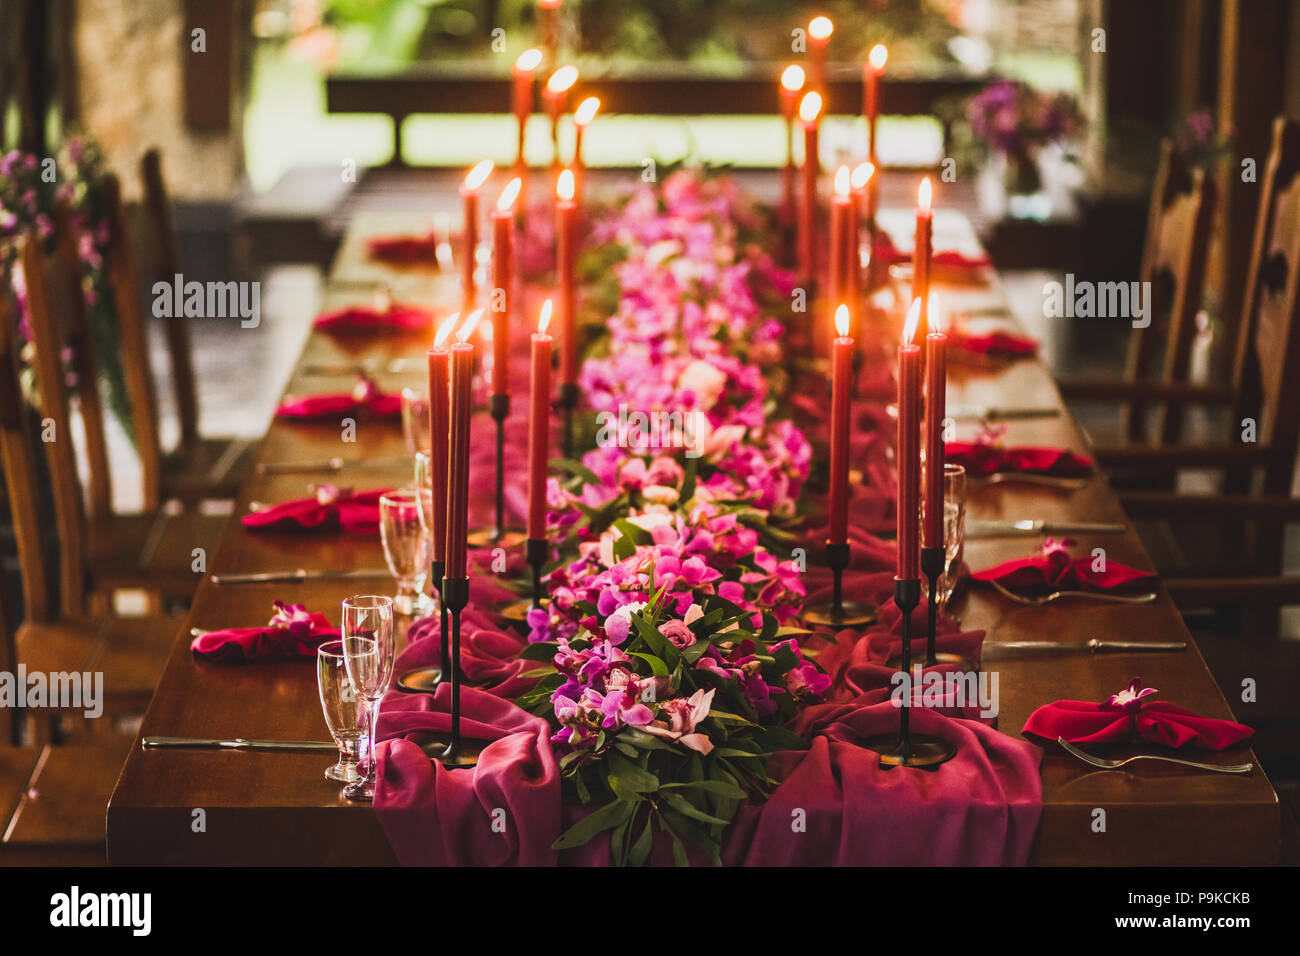 Table de mariage en bois décoré de bougies rouge, rose et violet tissu d'orchidées. Dîner romantique dans la soirée familiale Banque D'Images